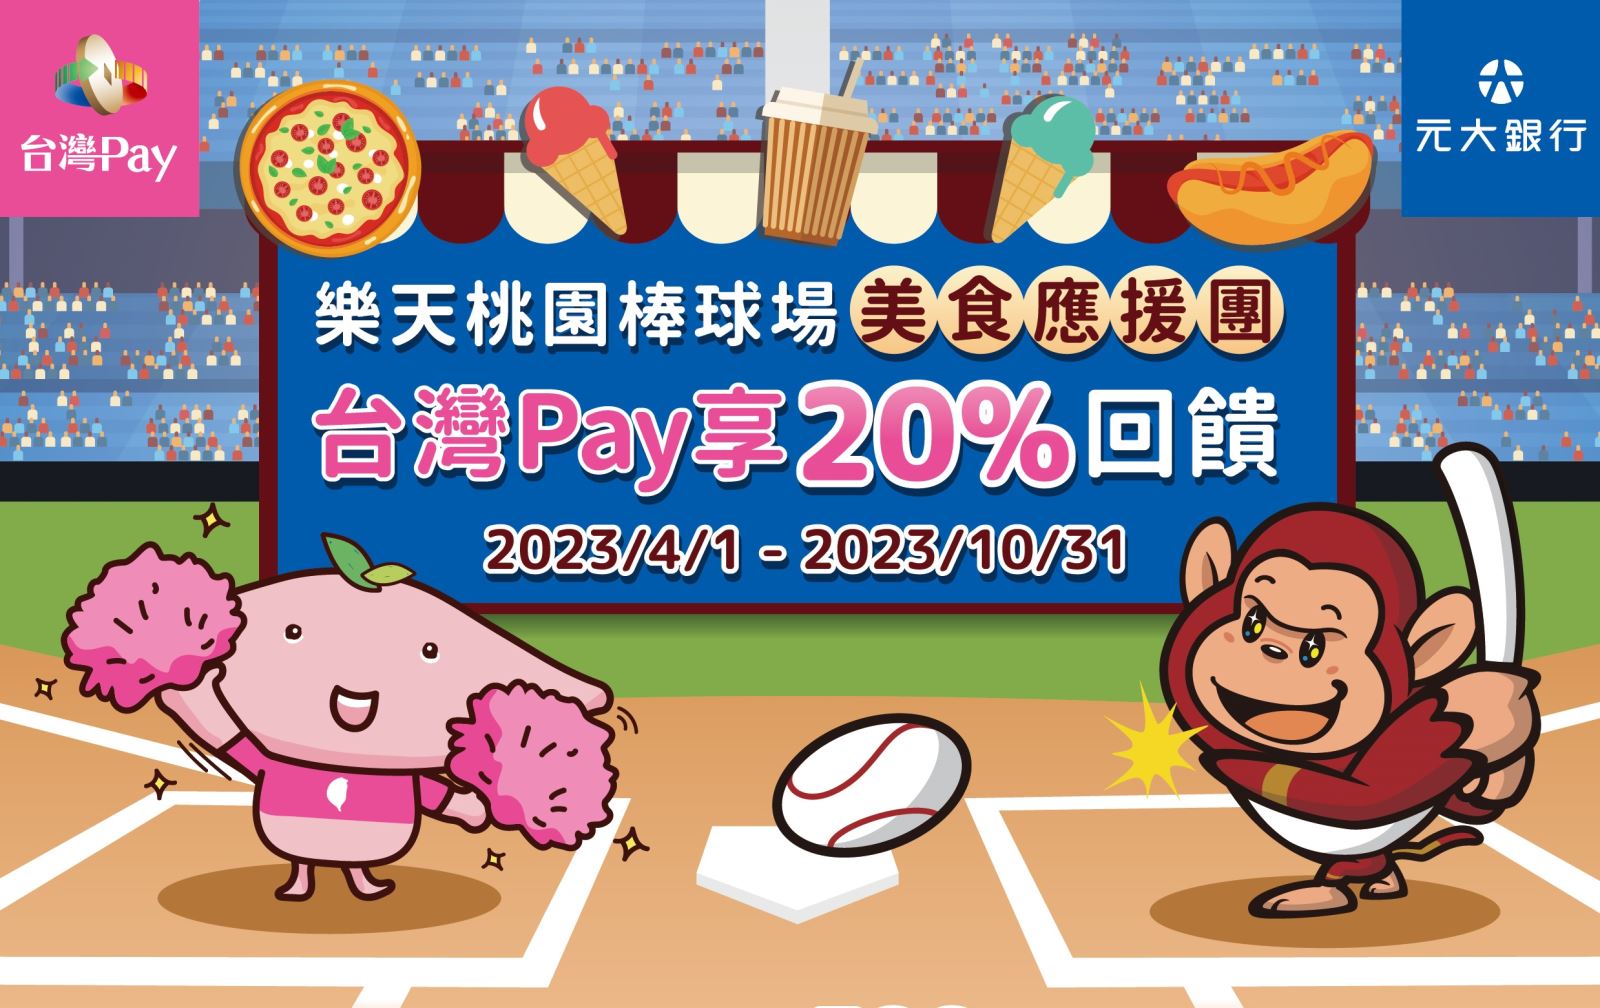 活動期間至活動地點出示「台灣Pay」付款條碼進行消費，單筆交易不限金額20%現金回饋，活動期間每卡號/帳戶回饋上限為新臺幣300元。